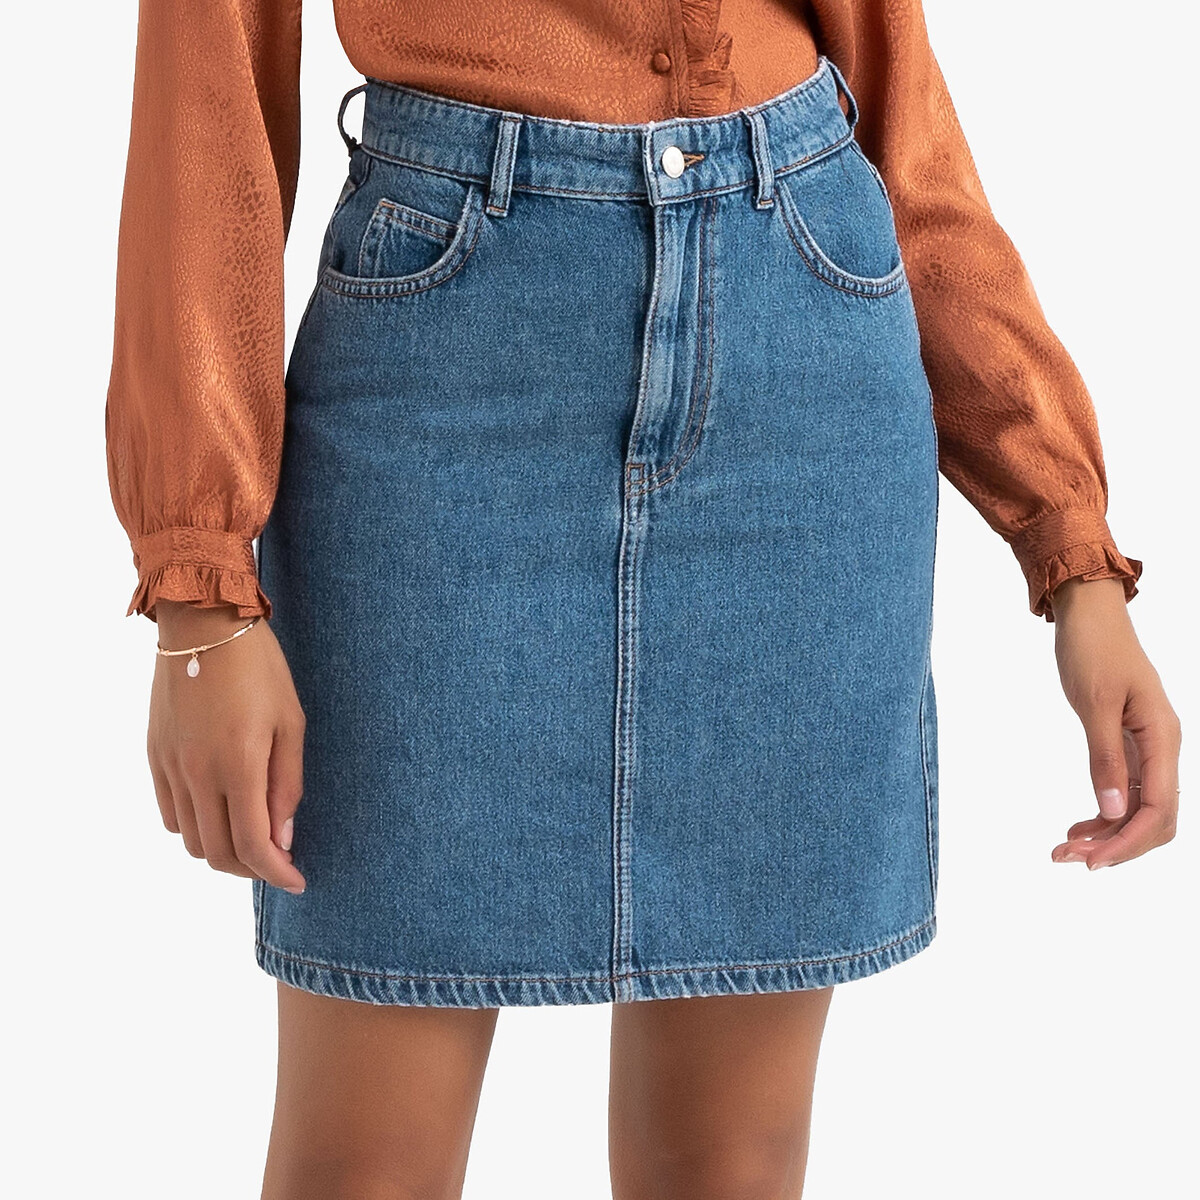 Купить джинсовую юбку в интернет магазине